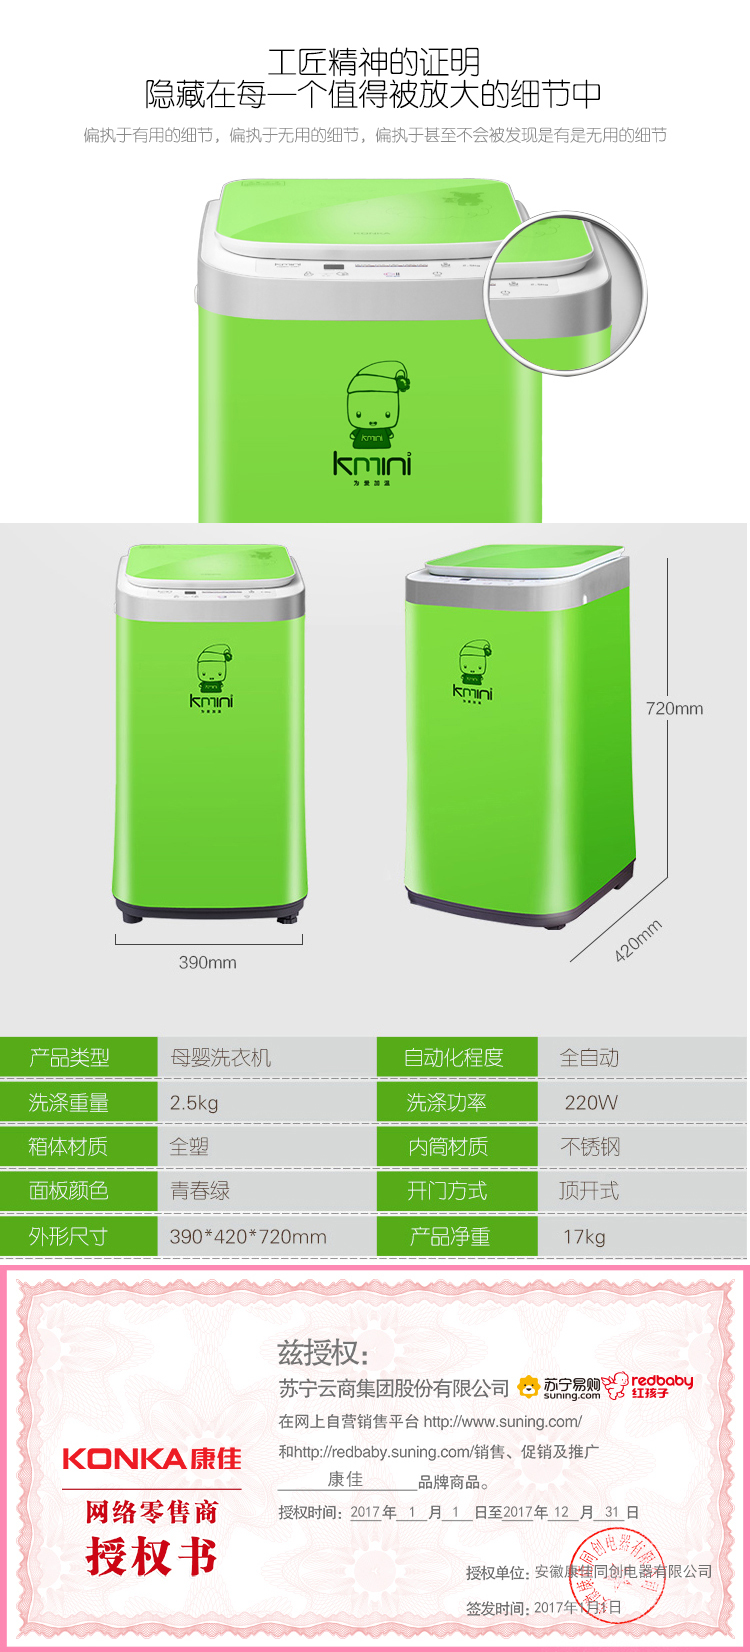 康佳（KONKA）Kmini洗衣机XQB25-632